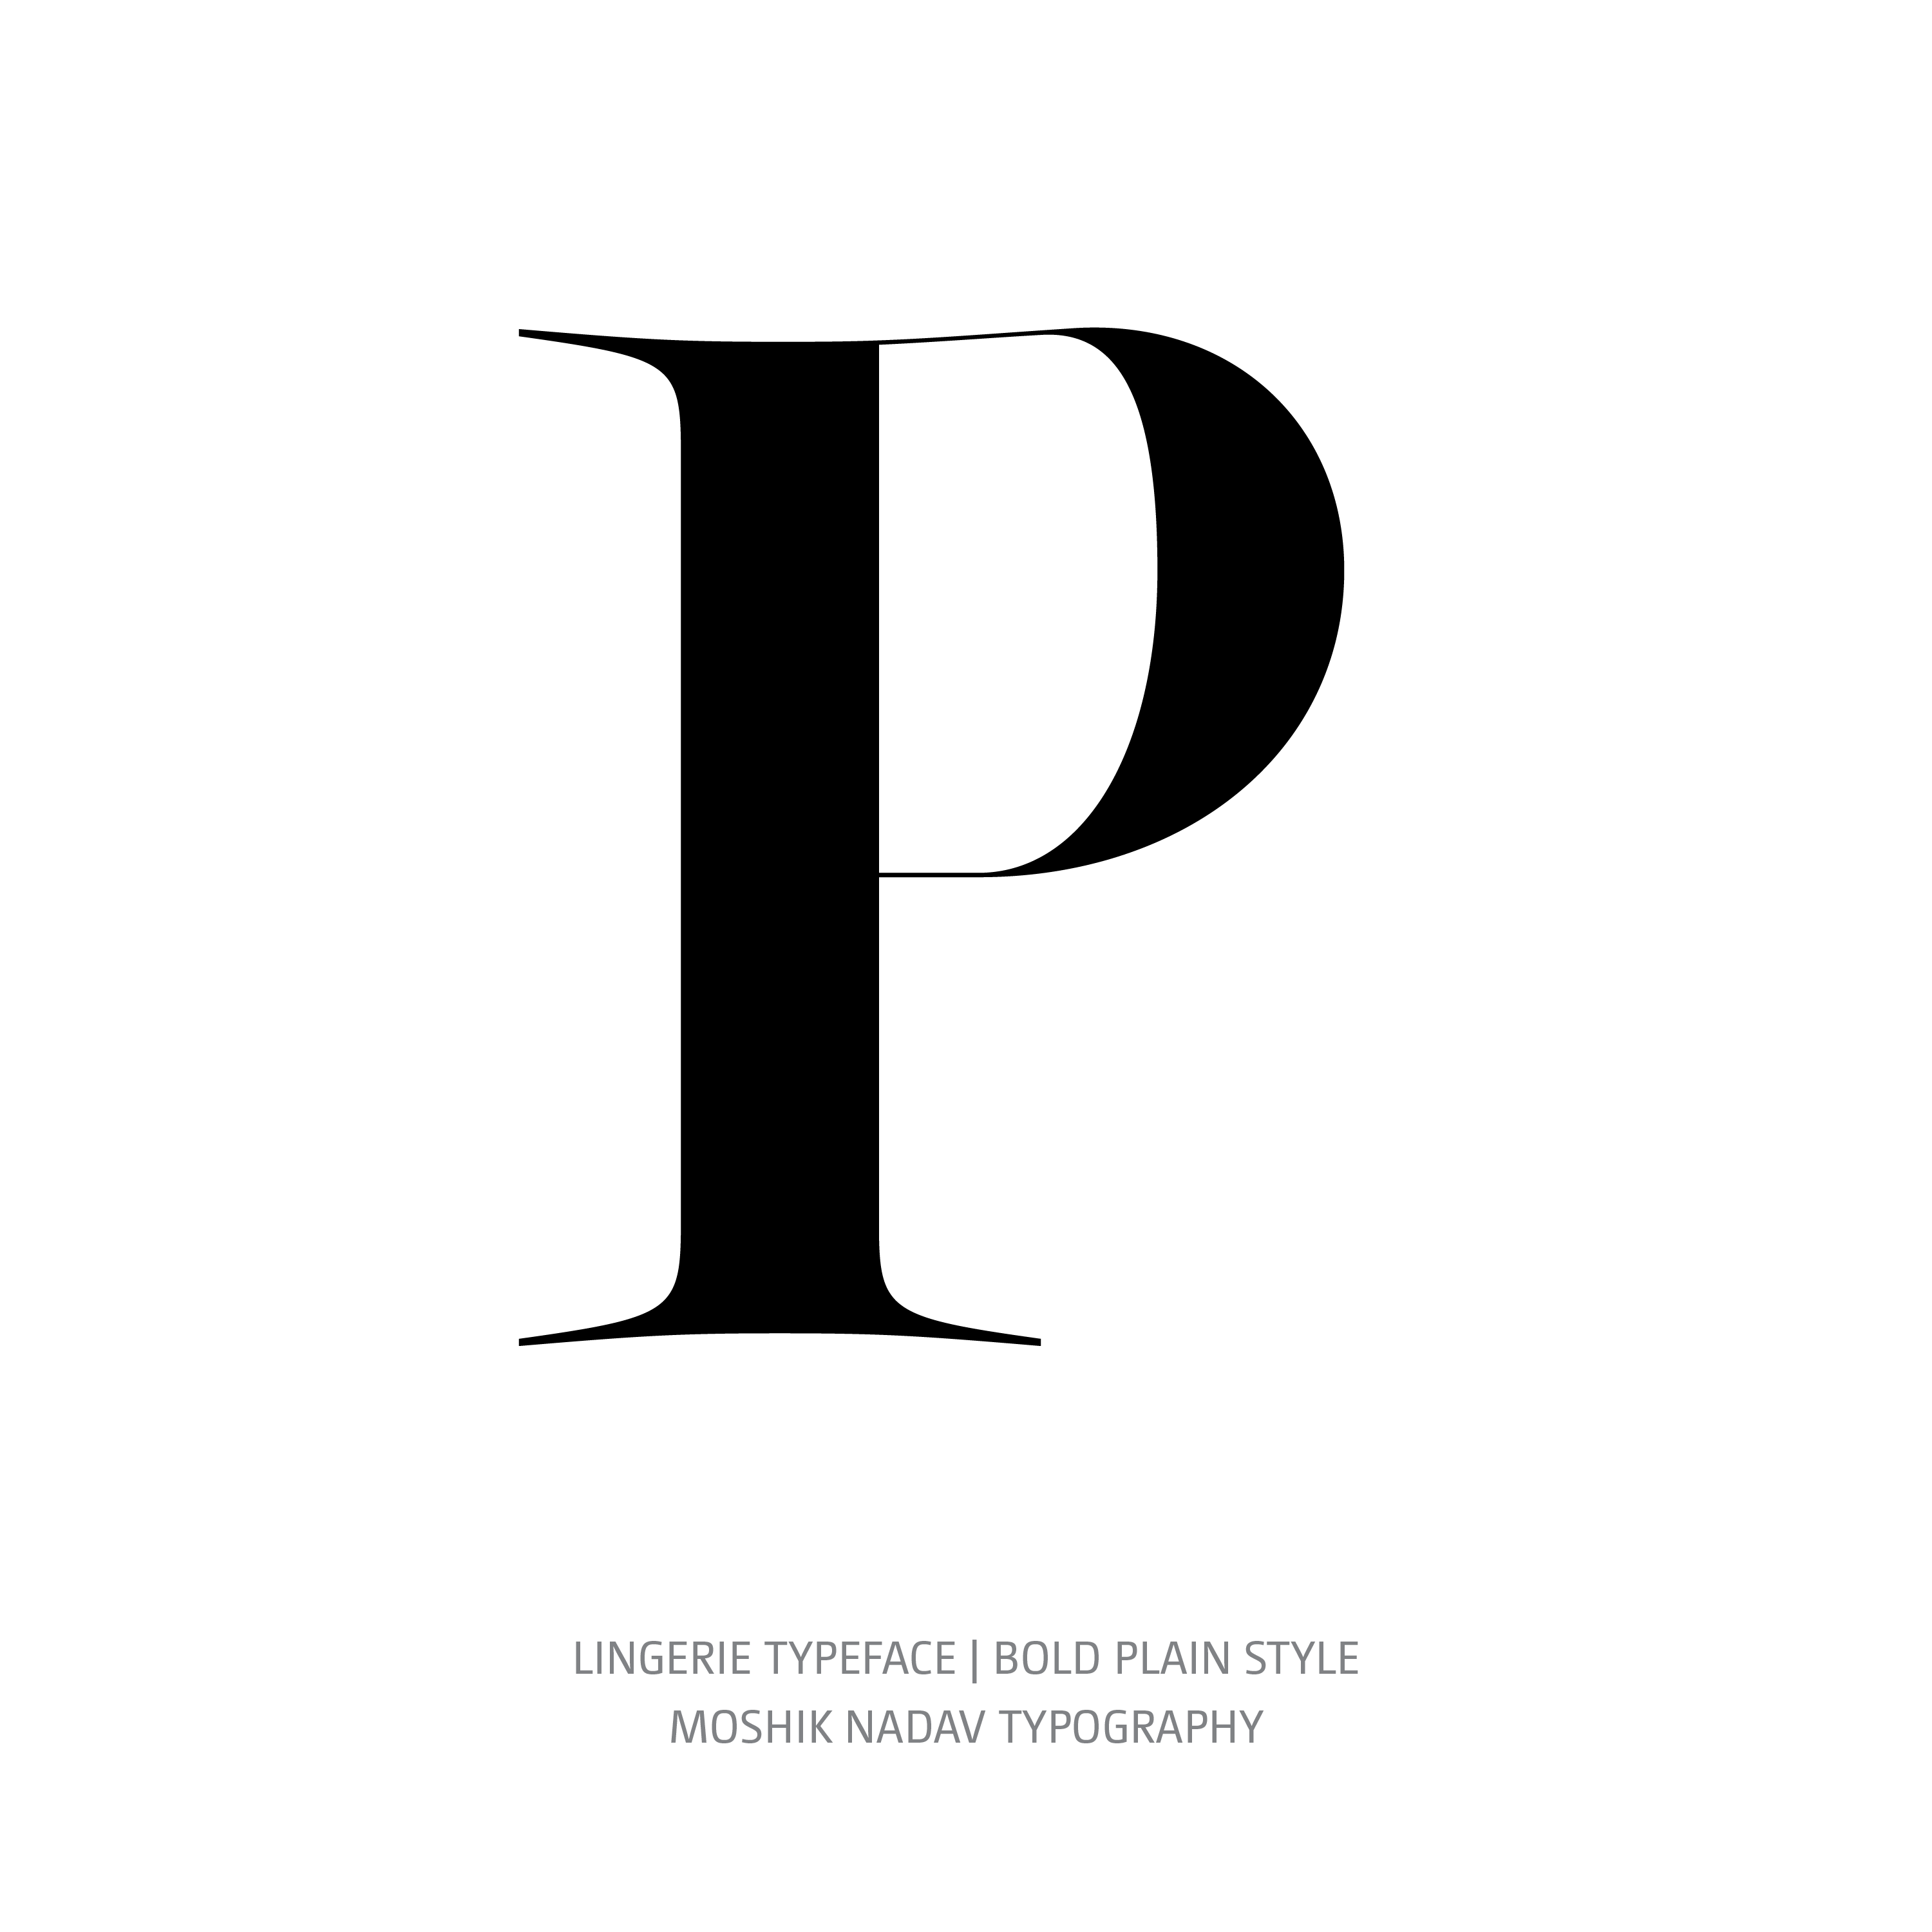 Lingerie Typeface Bold Plain P